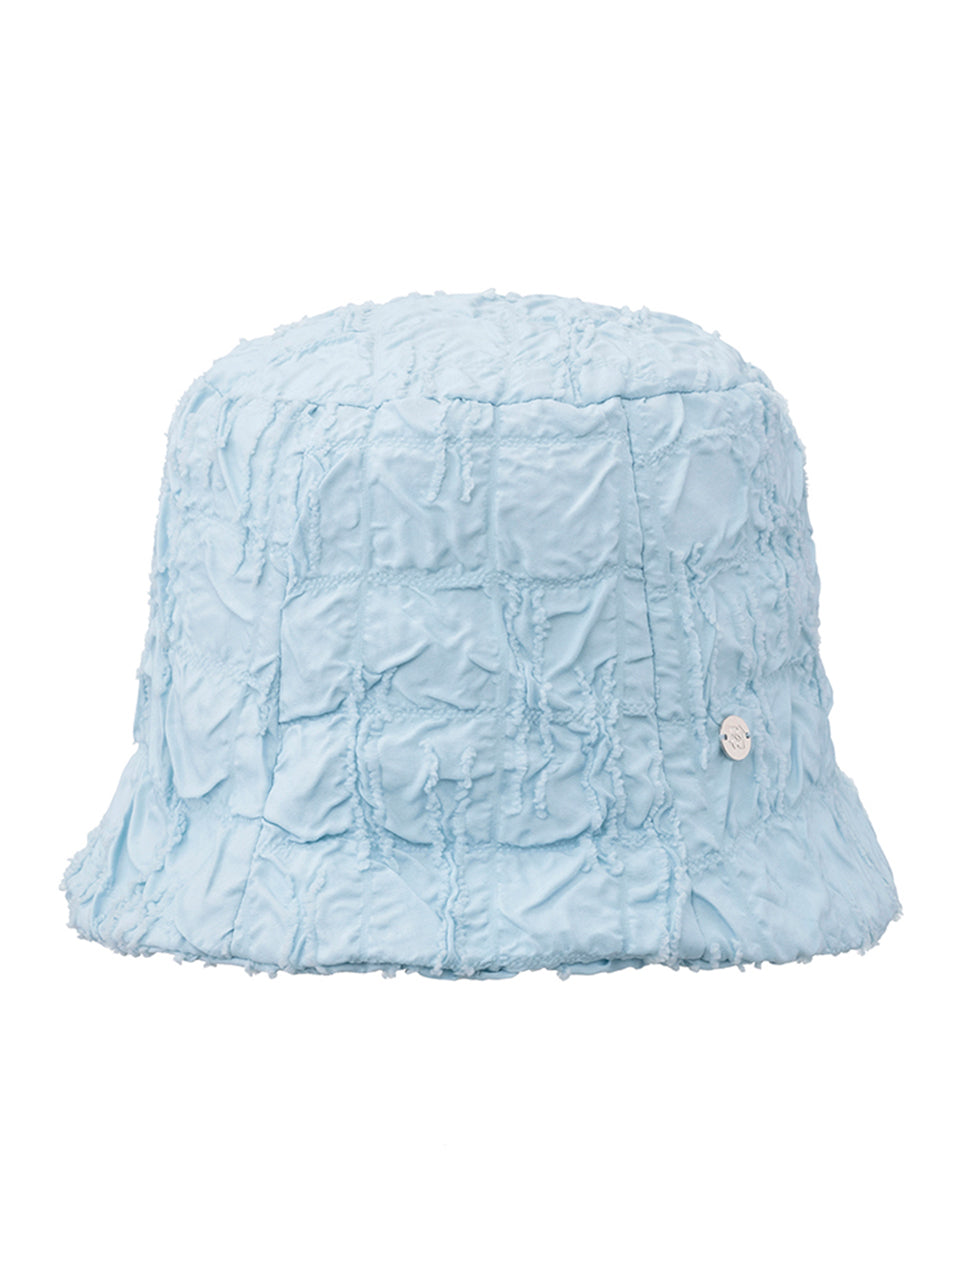 Jacquard Linkle Bucket Hat in S/Blue